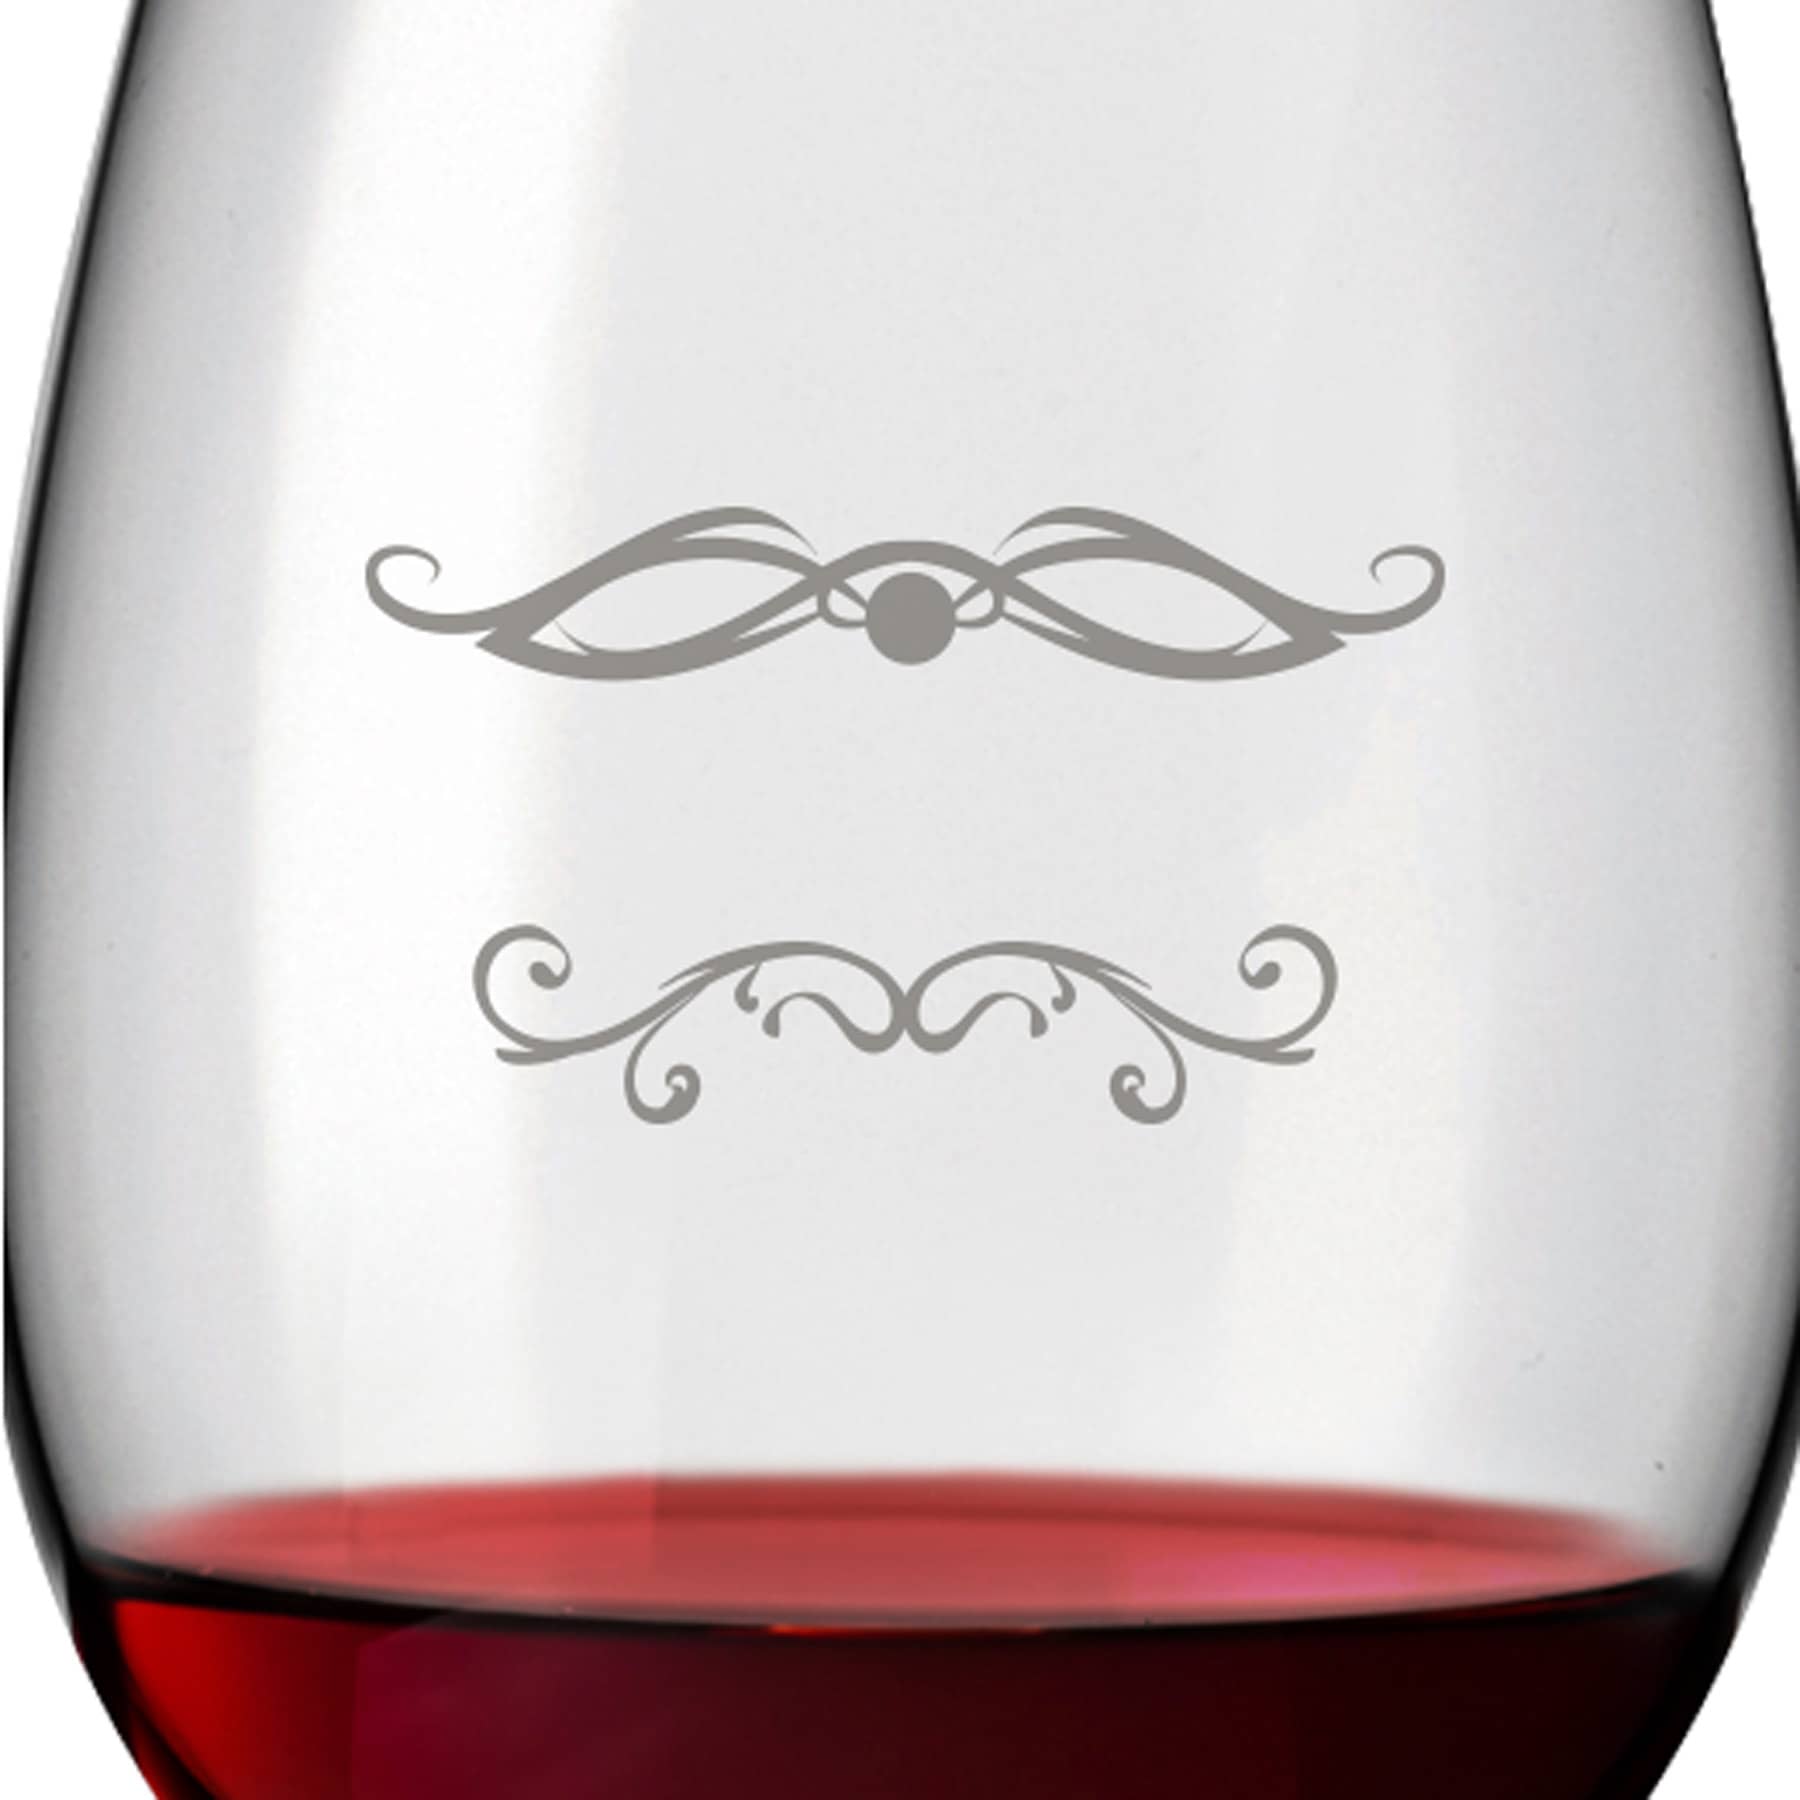 2x Leonardo Rotweinglas mit Namen oder Wunschtext graviert, 460ml, DAILY, personalisiertes Premium Rotweinglas in Gastroqualität (Barock 01)